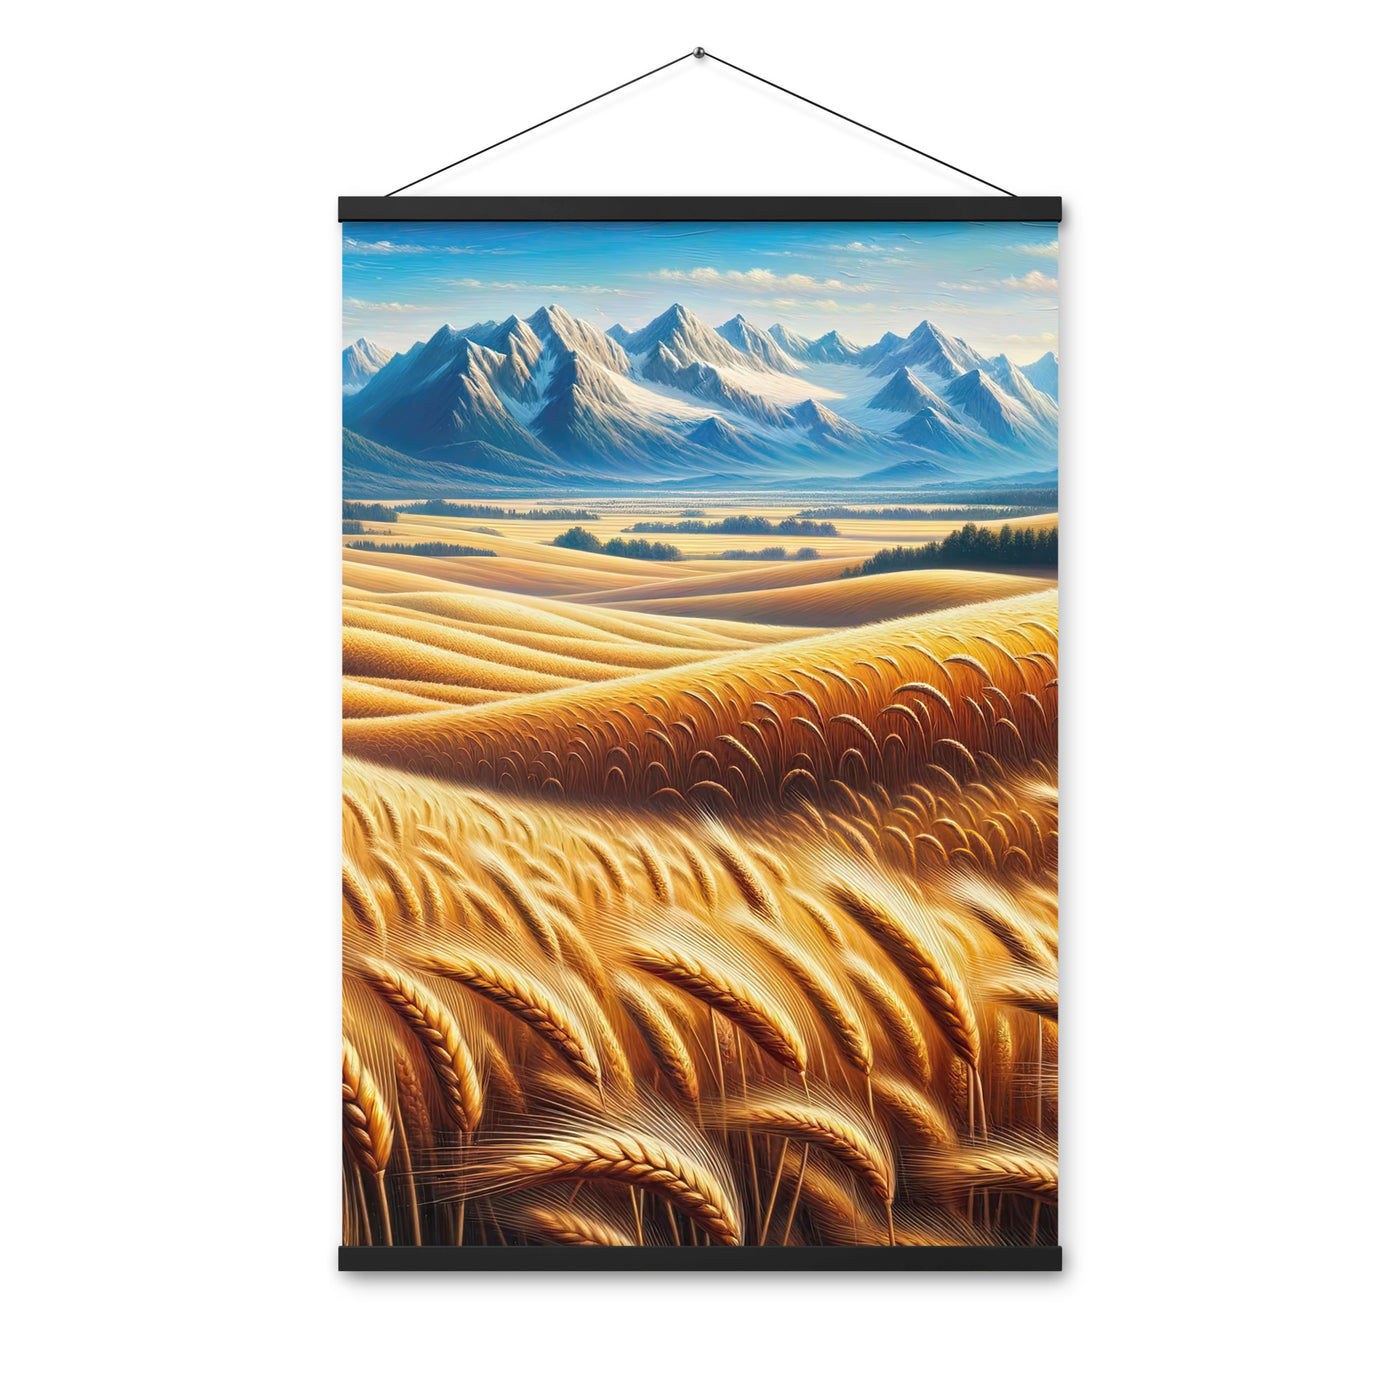 Ölgemälde eines weiten bayerischen Weizenfeldes, golden im Wind (TR) - Premium Poster mit Aufhängung xxx yyy zzz 61 x 91.4 cm